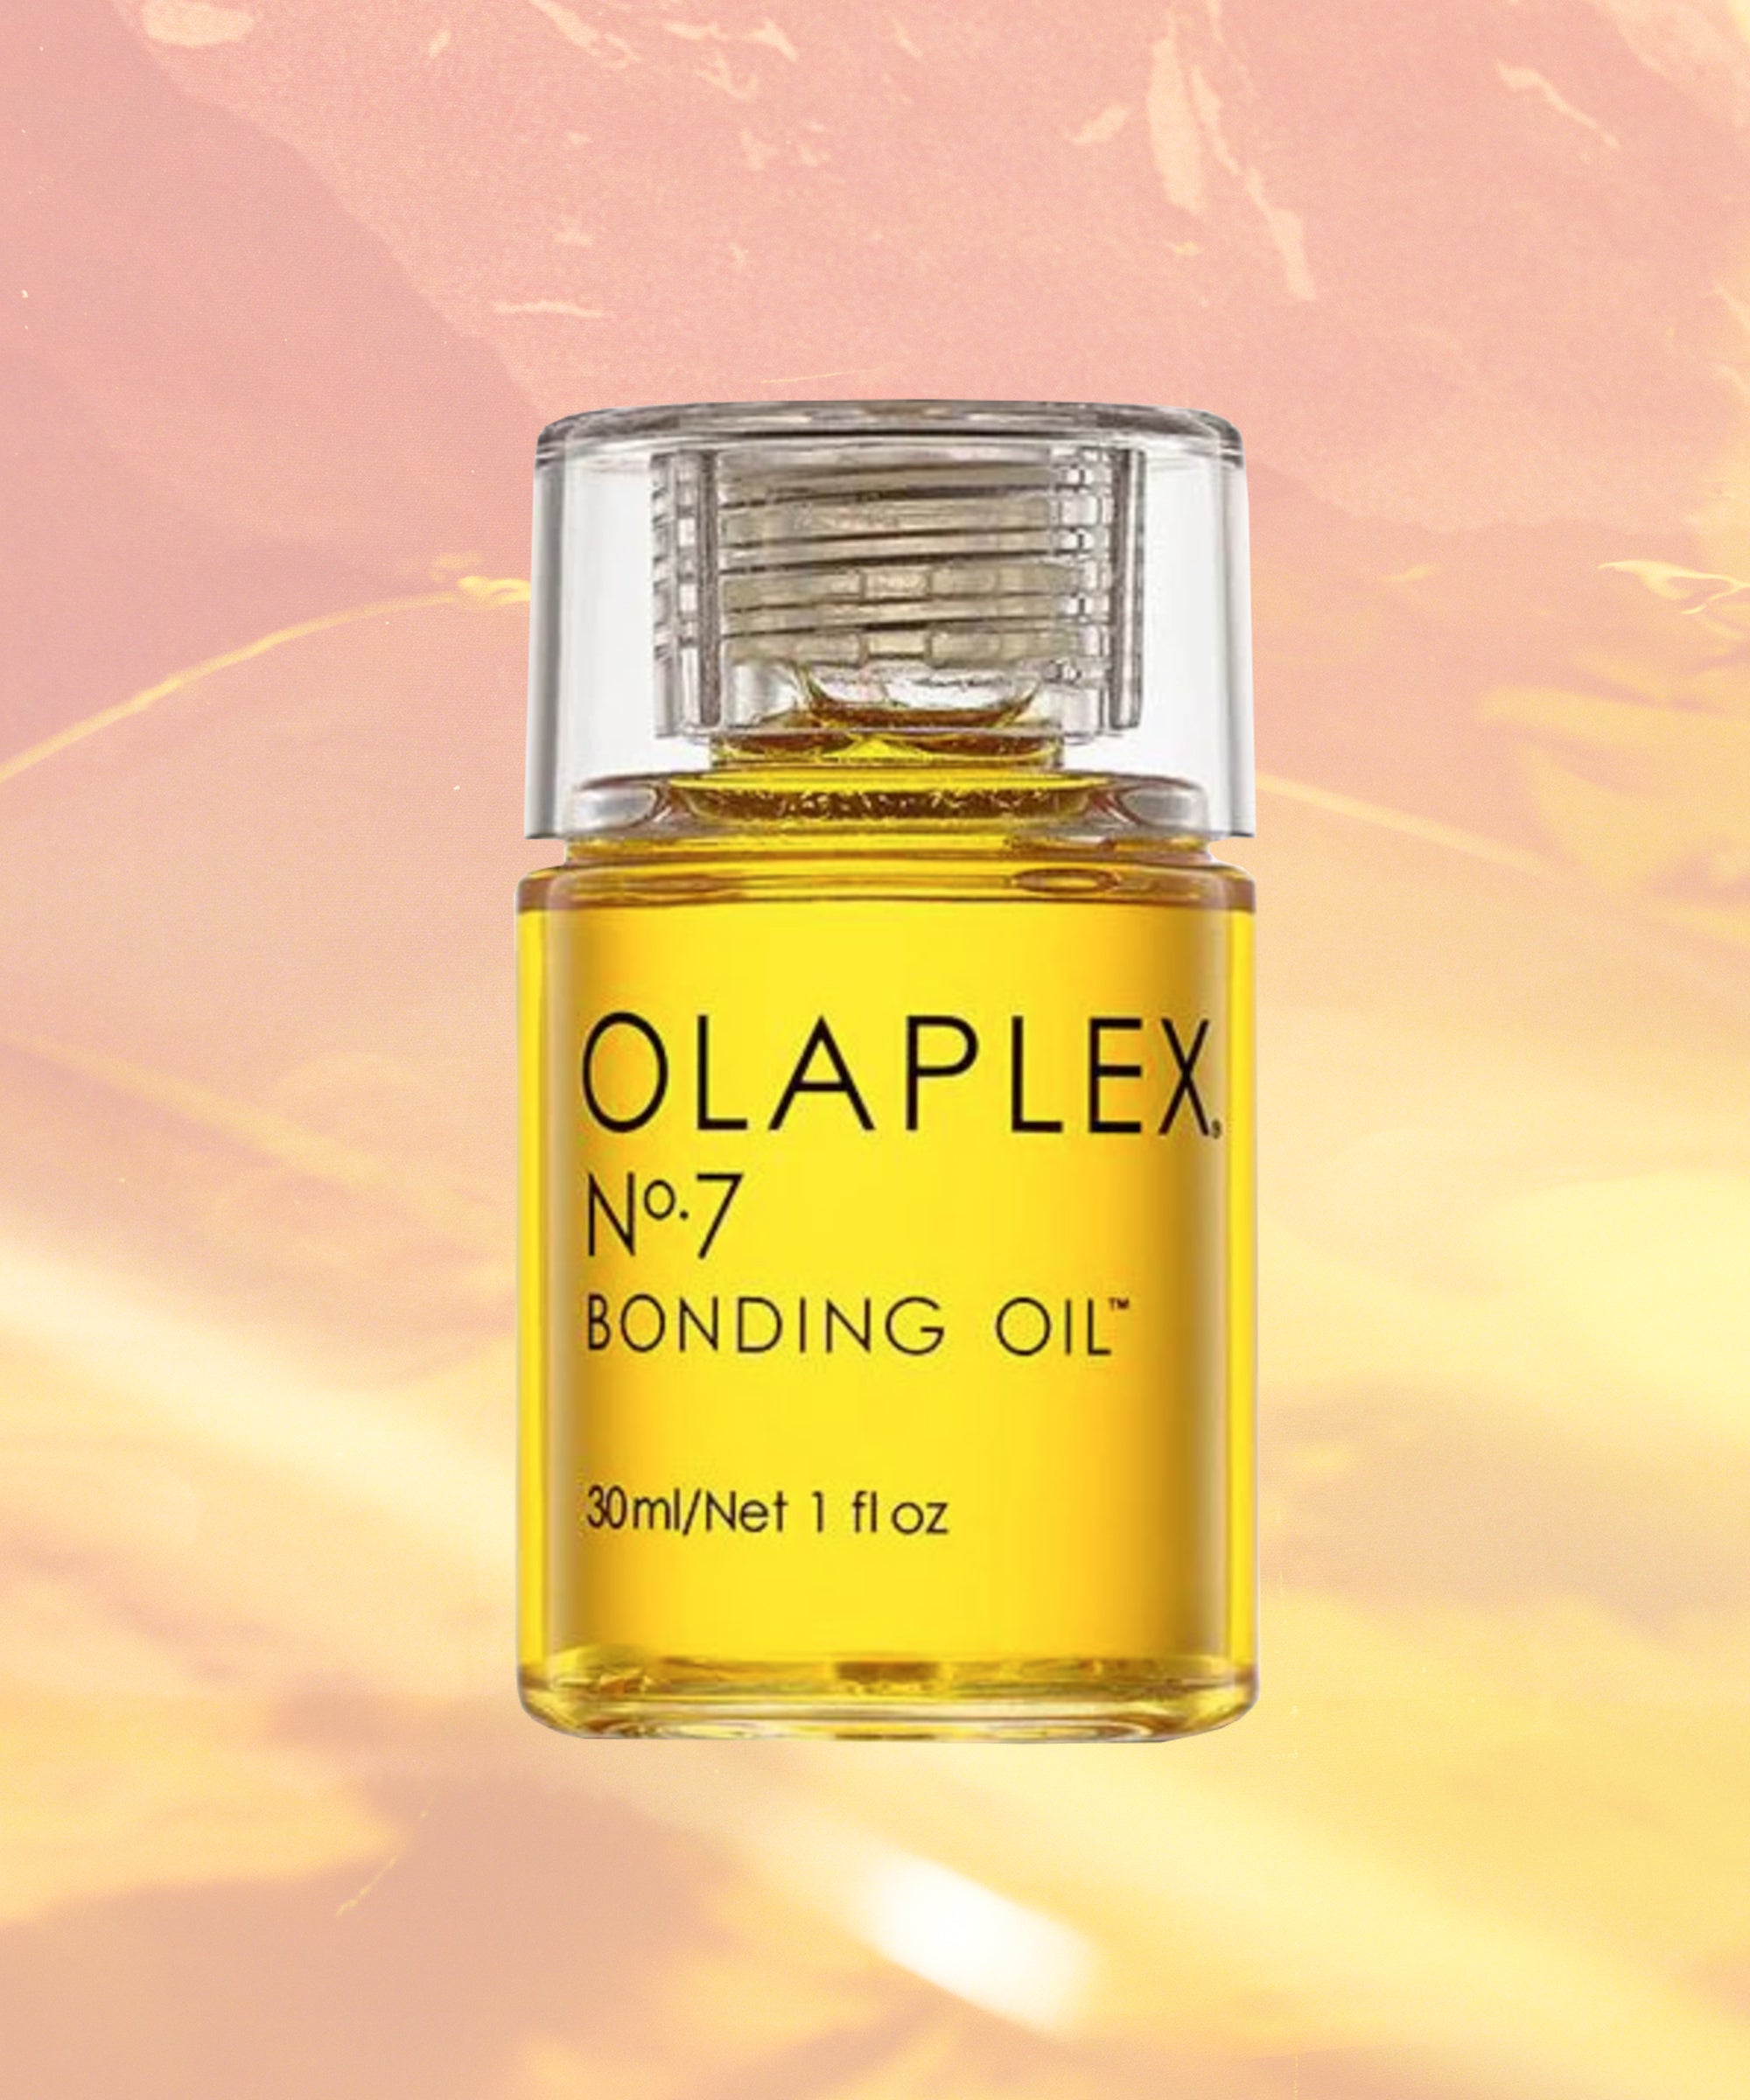 Olaplex Bonding Review For Damaged Hair